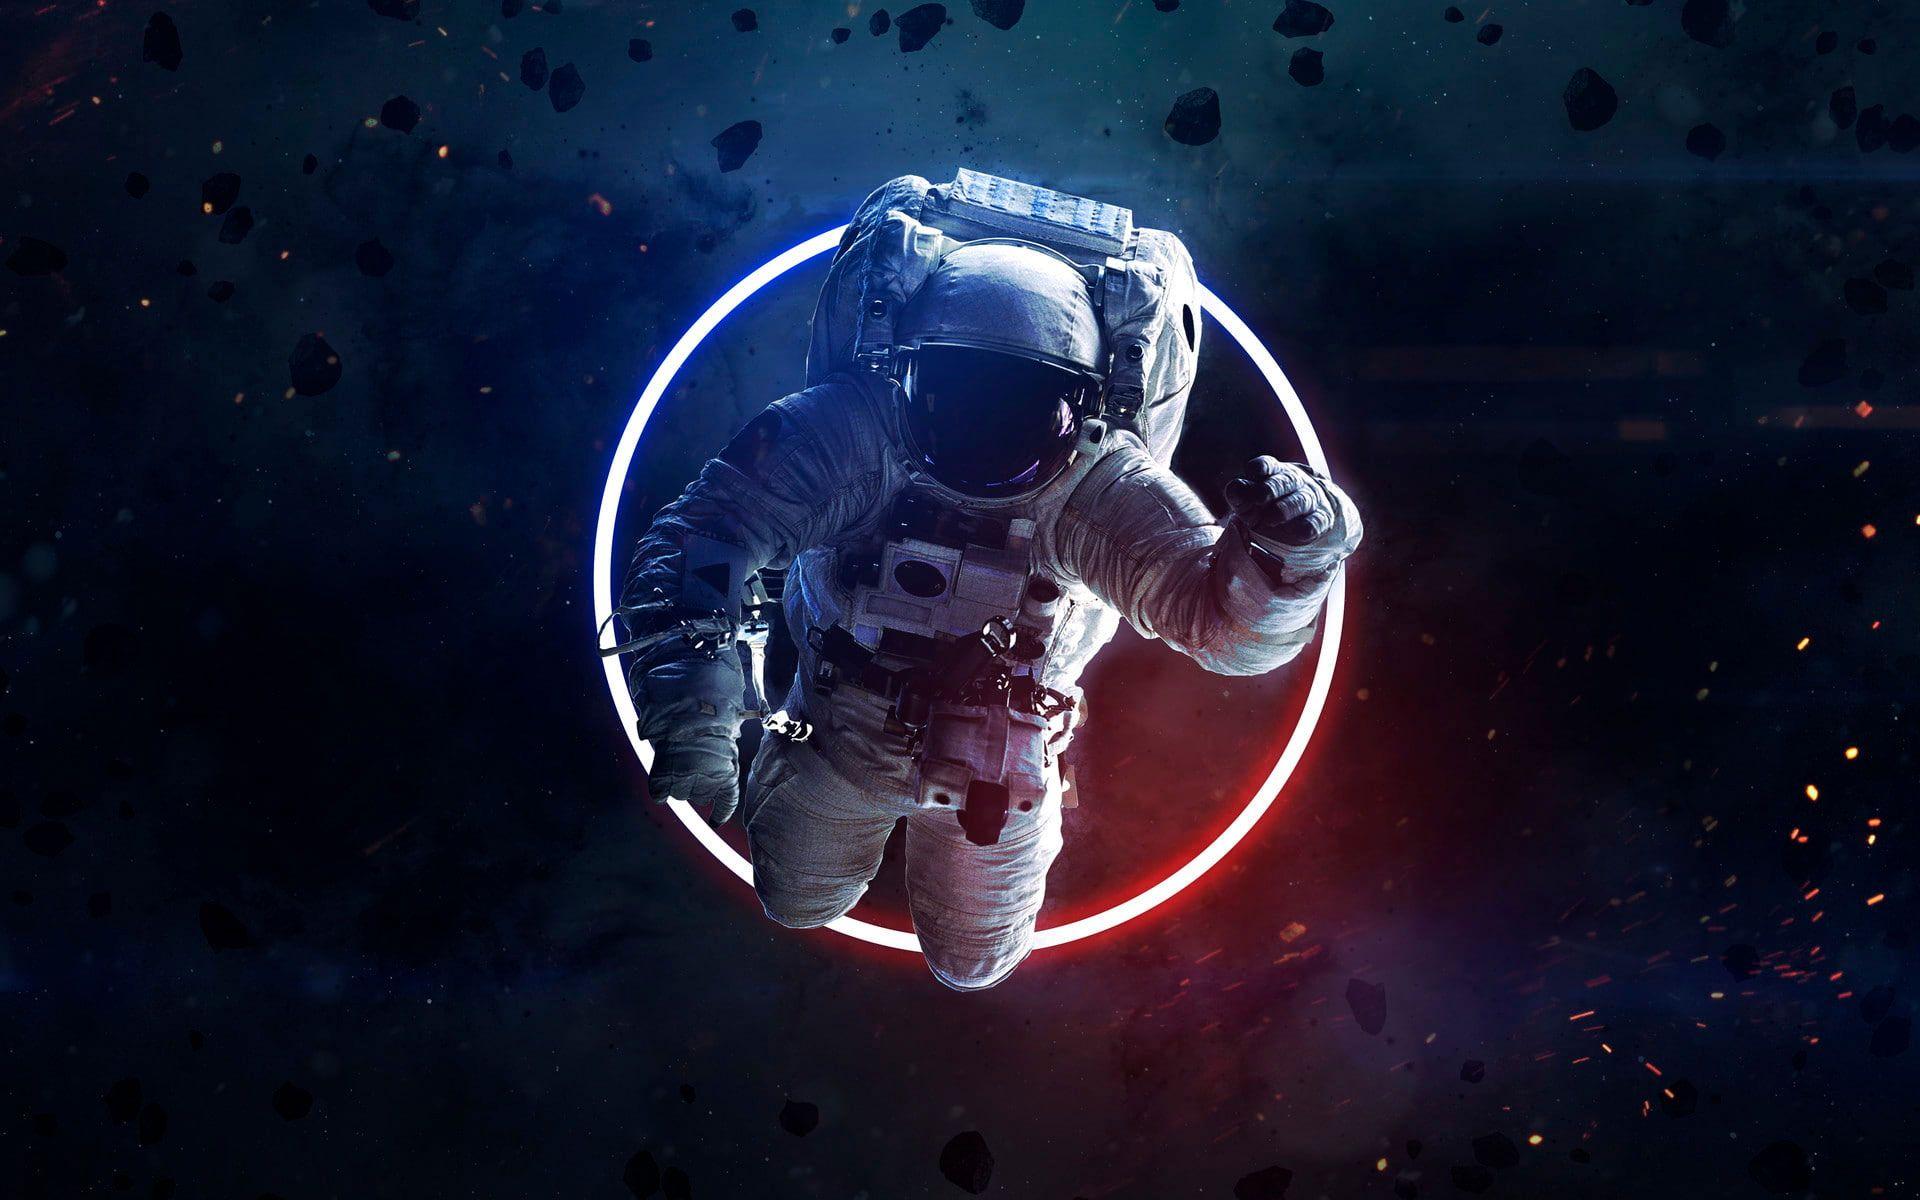 Astronaut Aesthetic Desktop Wallpapers - Top Free Astronaut Aesthetic